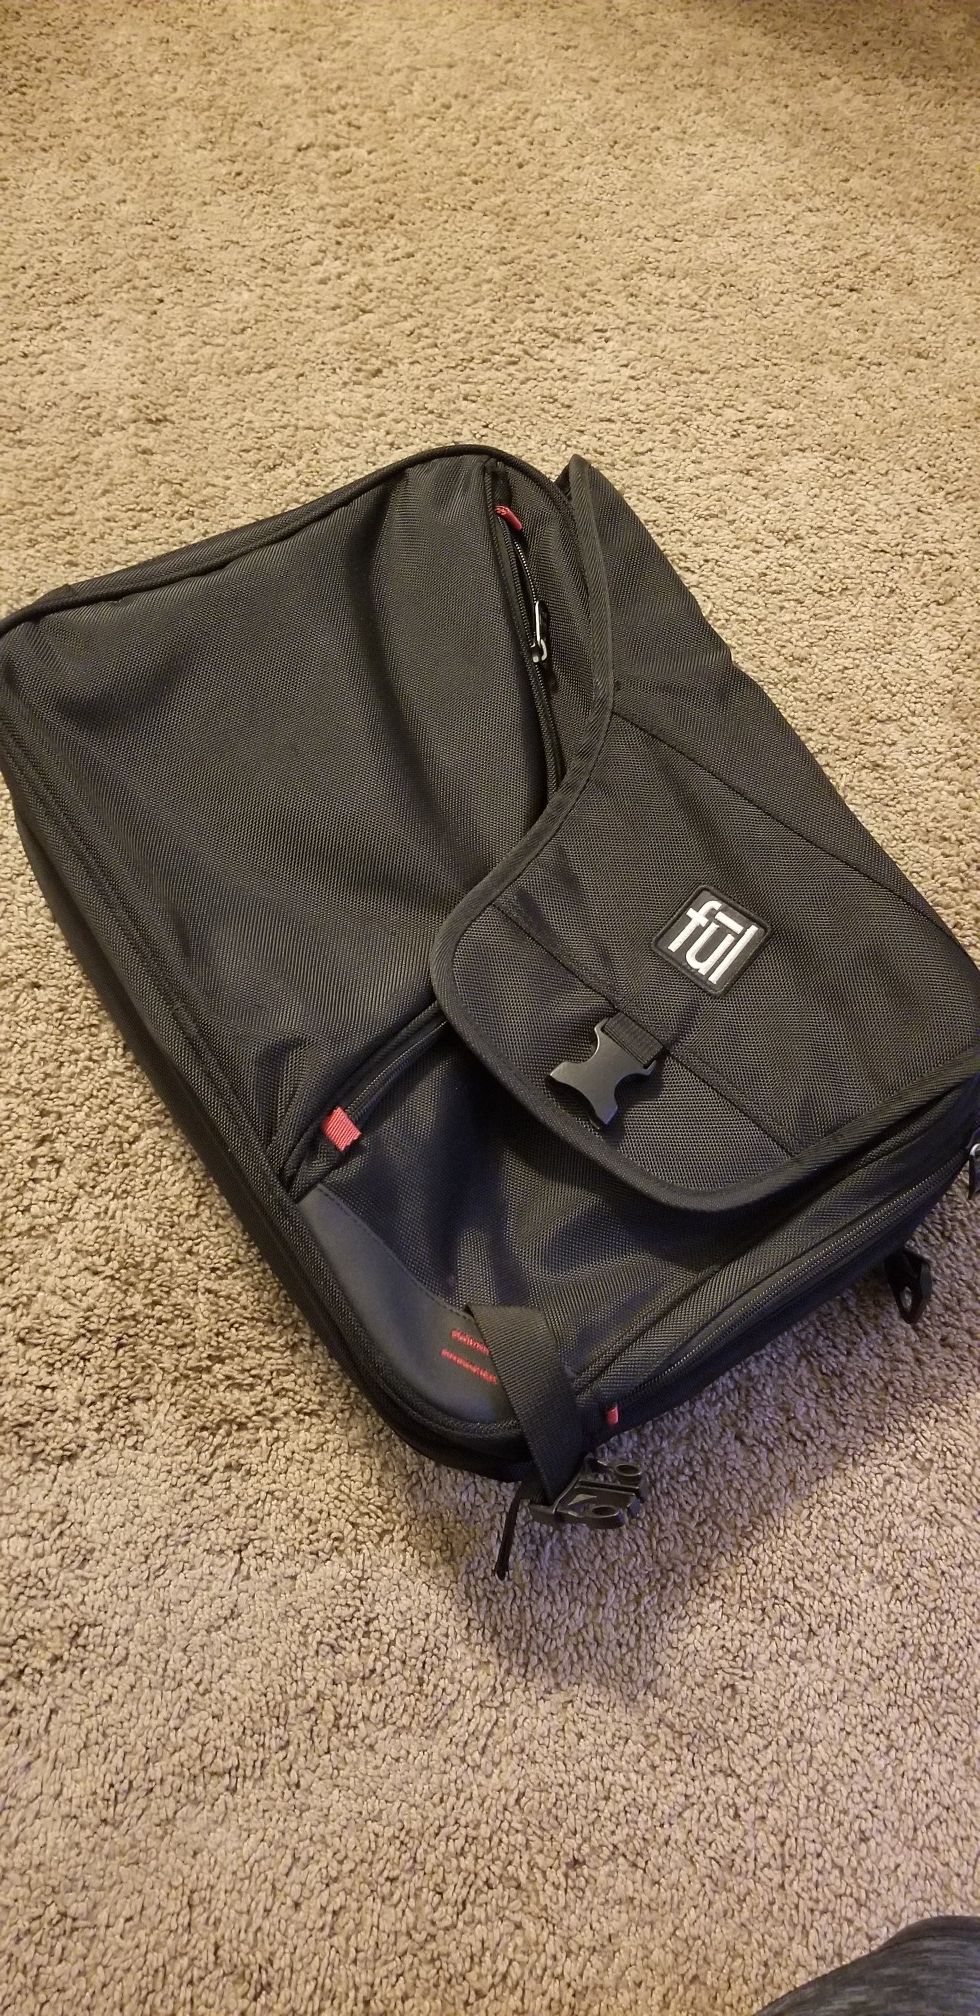 Fūl laptop carrying case